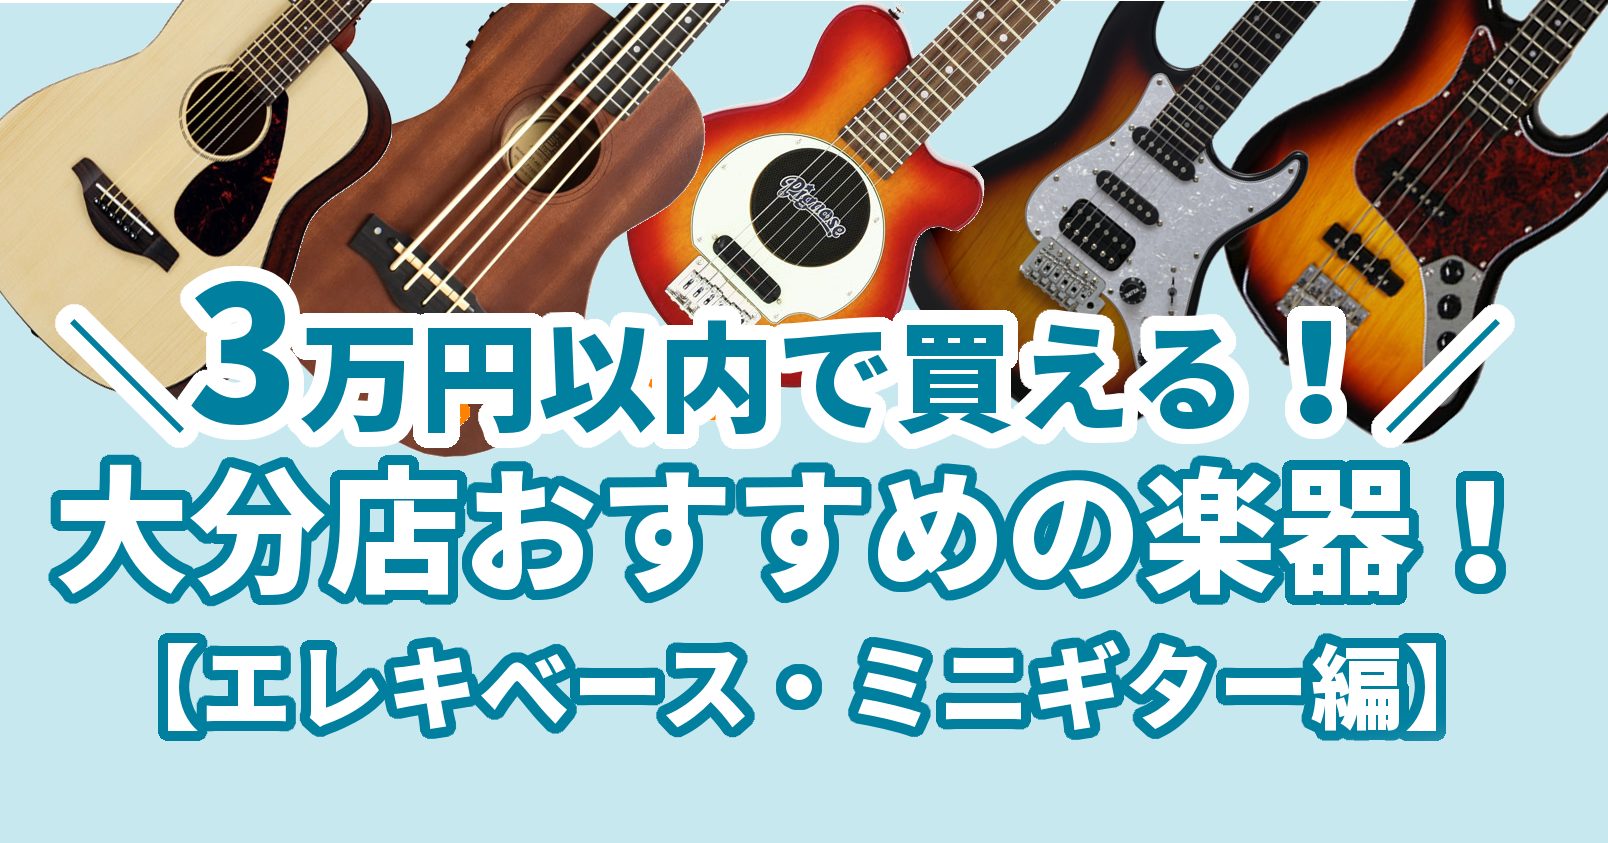 *3万円以内で楽器が買えます!!新しい趣味にいかがですか？♪ 皆さんこんにちは！本日はお手頃価格な楽器達をご紹介させていただきます～！]]楽器と聞くと、『絶対高い…』『手が出せない…』というイメージを持たれる方もいらっしゃるのではないでしょうか。 [!!しかし!!!!!]実は[!!リーズナブルな楽器 […]